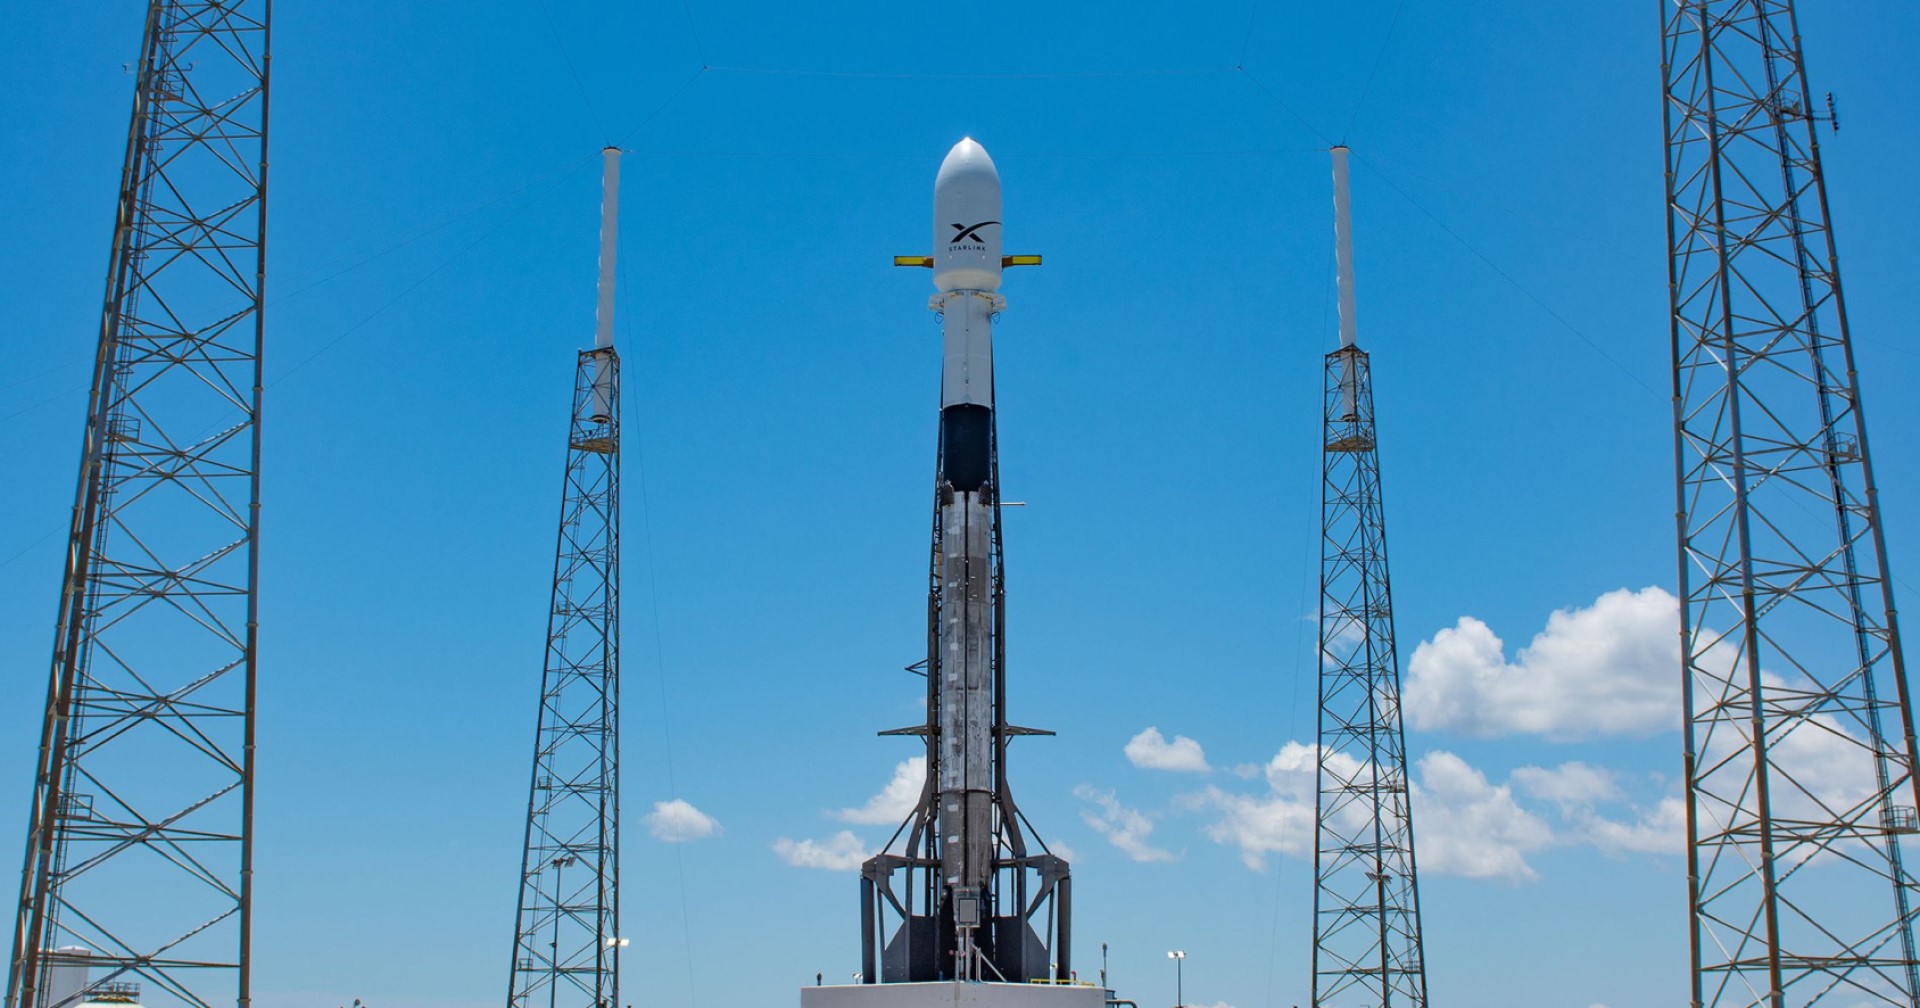 SpaceX กำลังจะปล่อยดาวเทียม Starlink V2 Mini จำนวน 21 ดวง ในภารกิจ Group 6-1